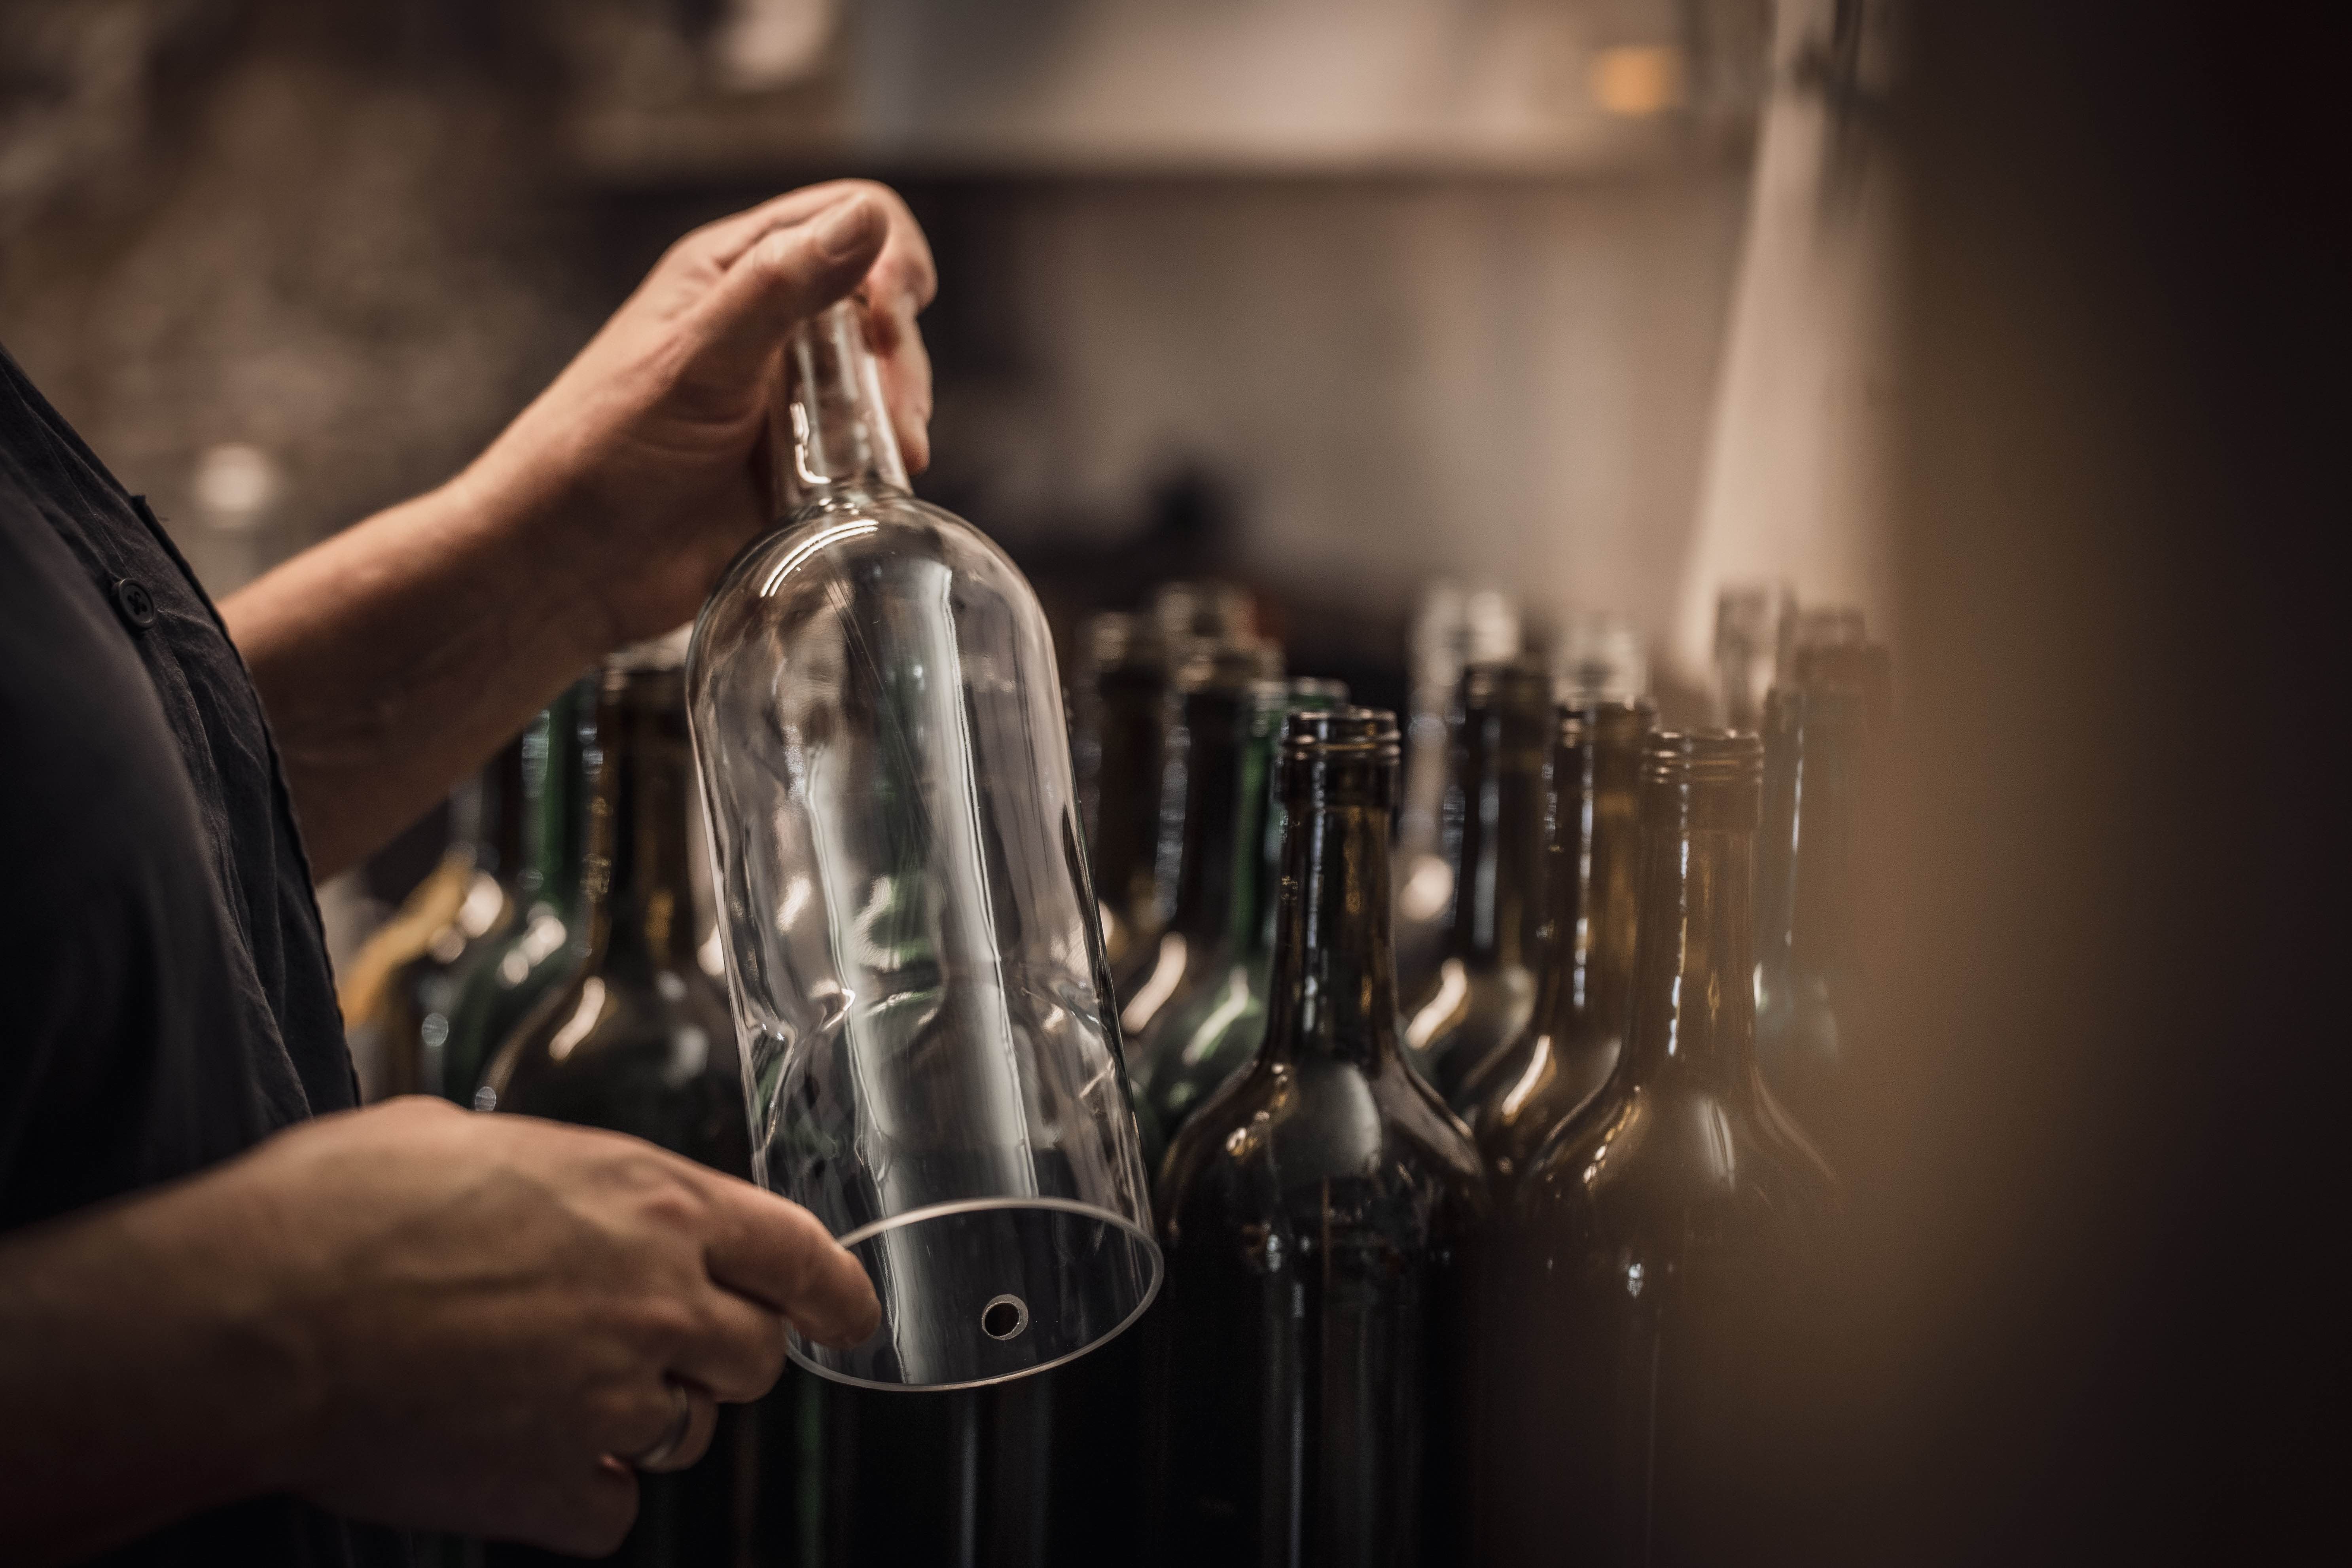 WINDLICHT aus der deutschen Wein Flasche in transparent